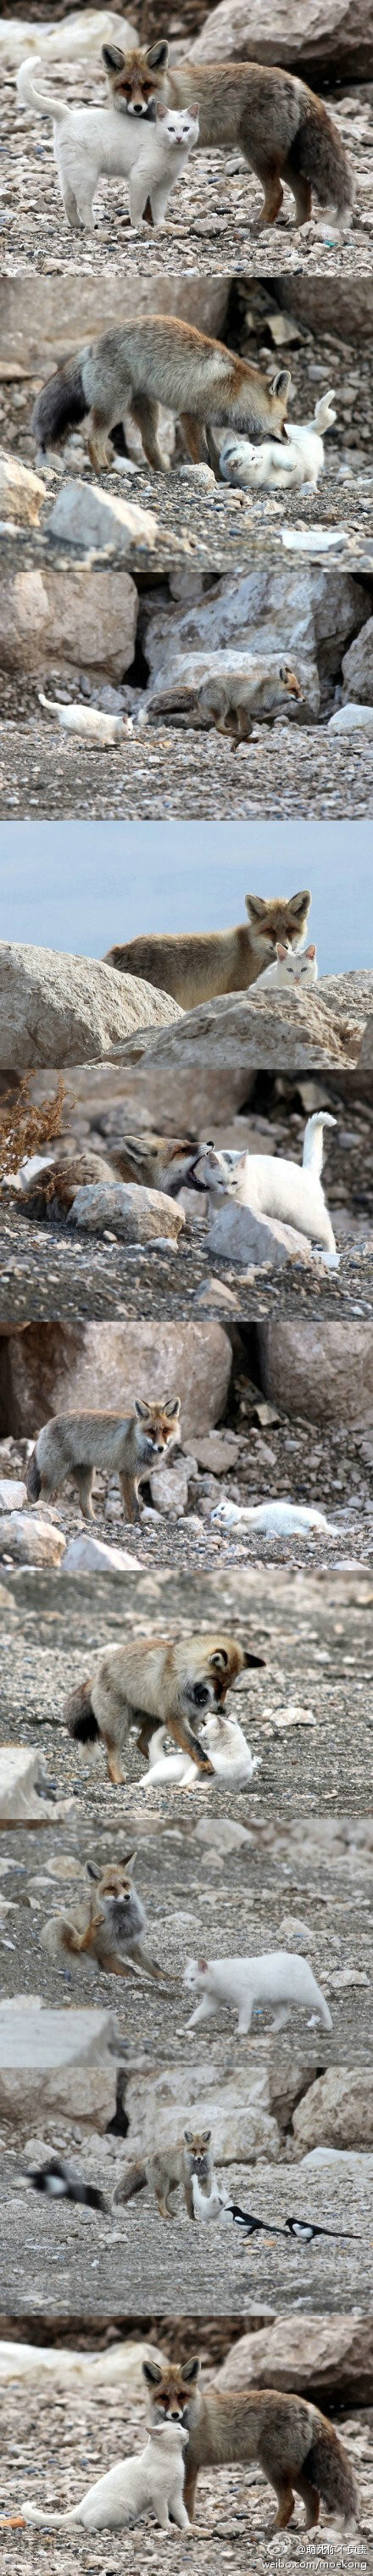 土耳其凡湖边的一只猫和一只狐狸，因为渔民们常丢鱼给它们一起吃而成为了好伙伴。 每隔几张就能看到狐狸君很努力地在抑制着自己一口啃下去的冲动，真是辛苦了~「转」